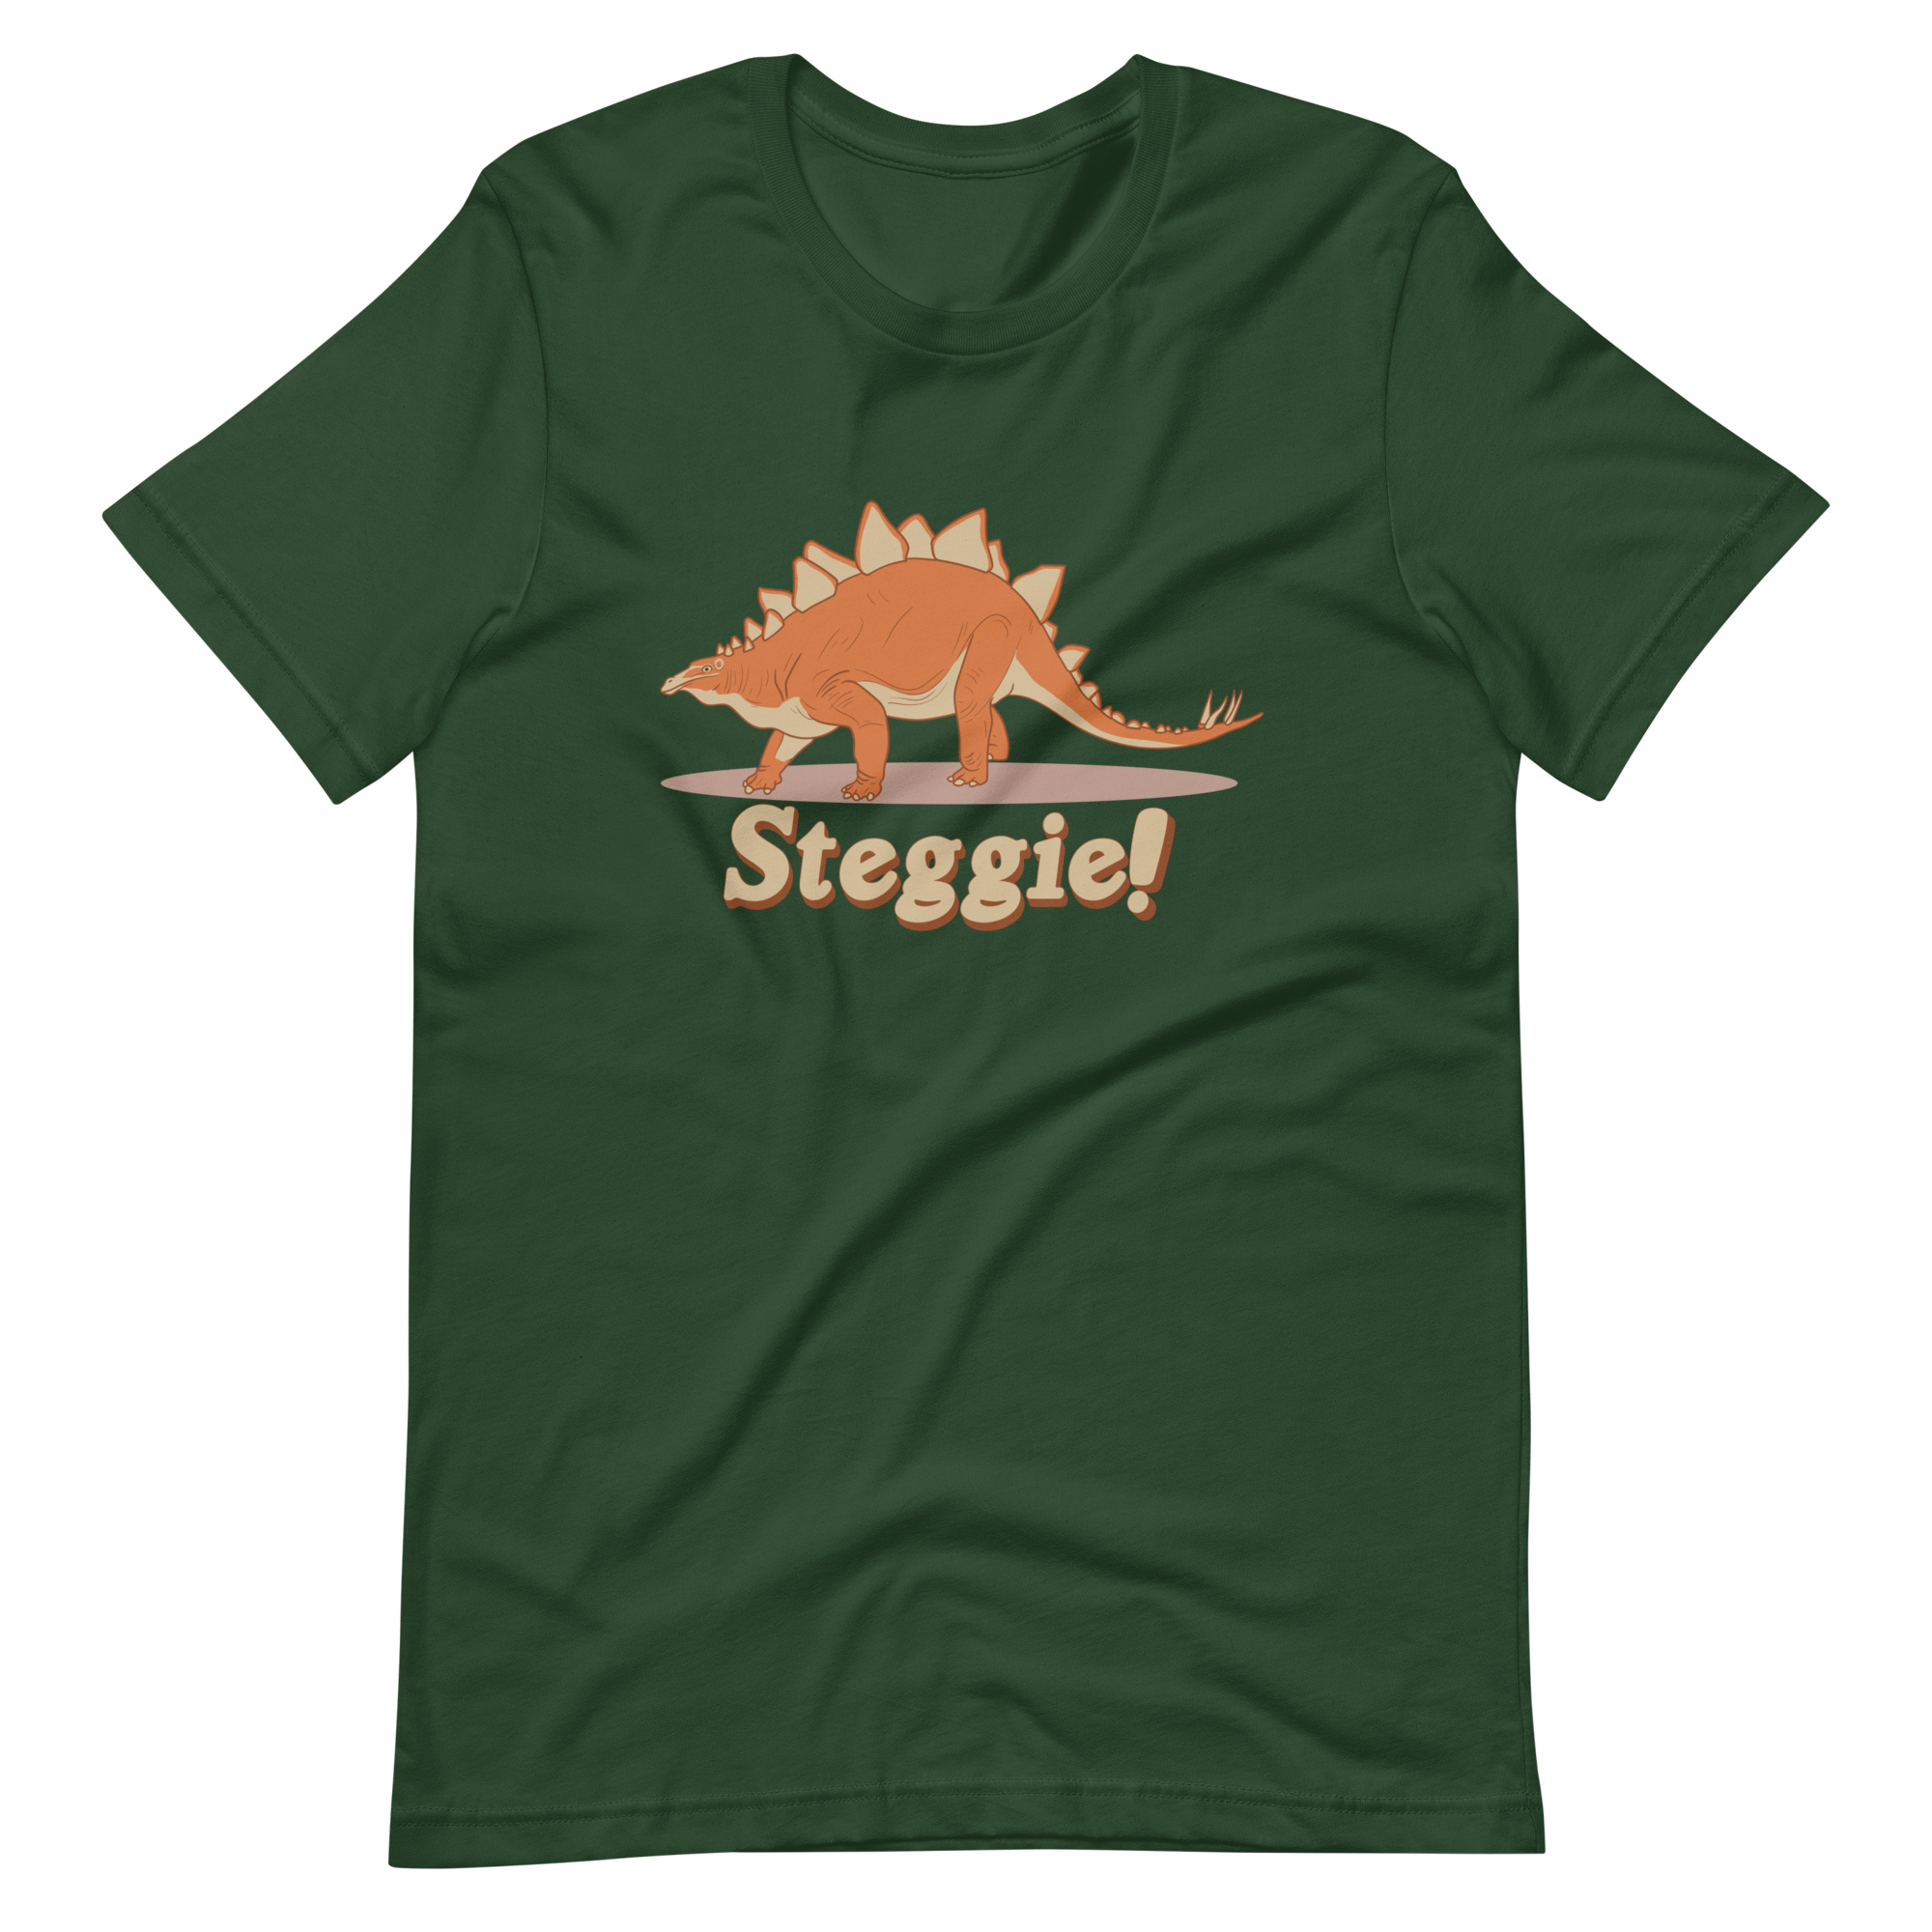 Steggie! Cleveland Dinosaur T-Shirt